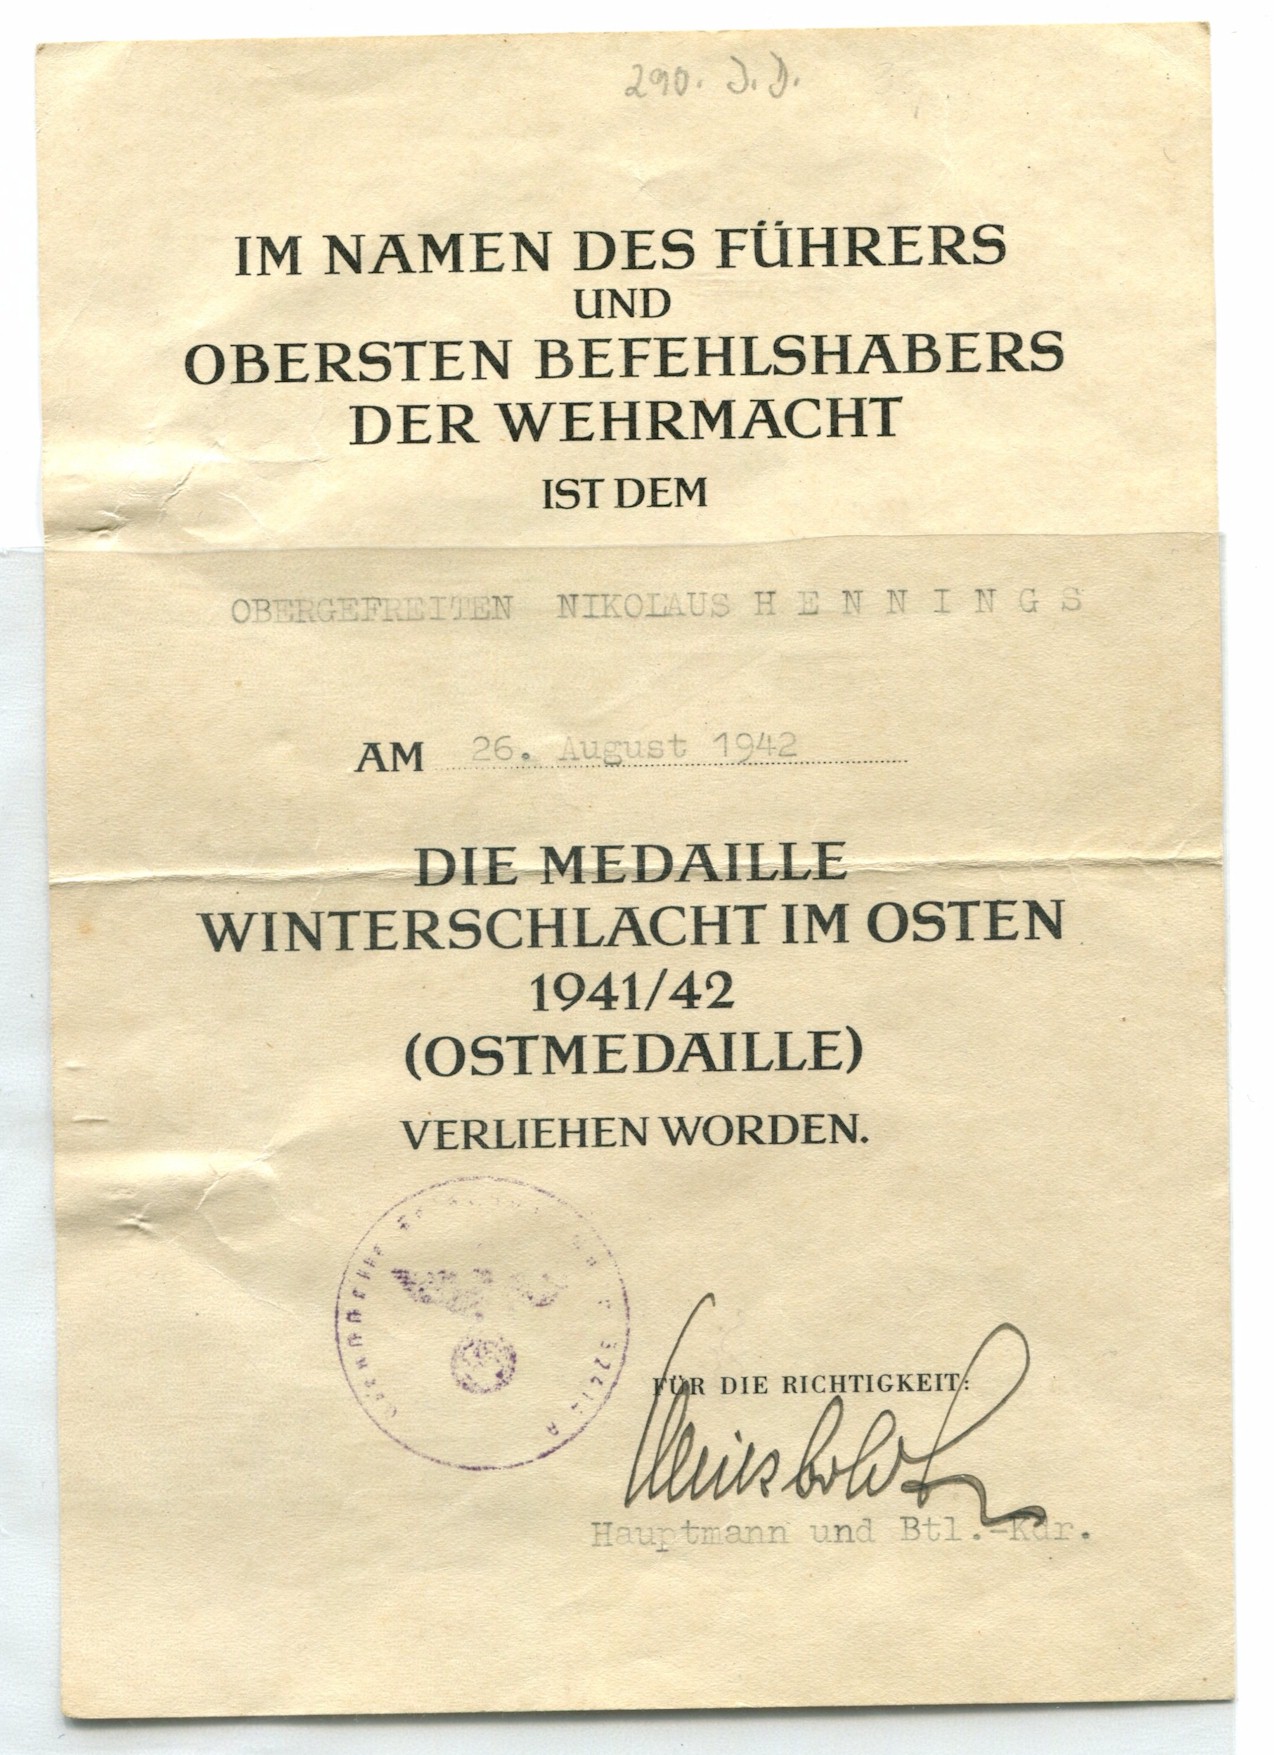 GERMAN AWARD DOCUMENT DIE MEDAILLE WINTERSCHLACHT IM OSTEN 1941/42 (OSTMEDAILLE) 